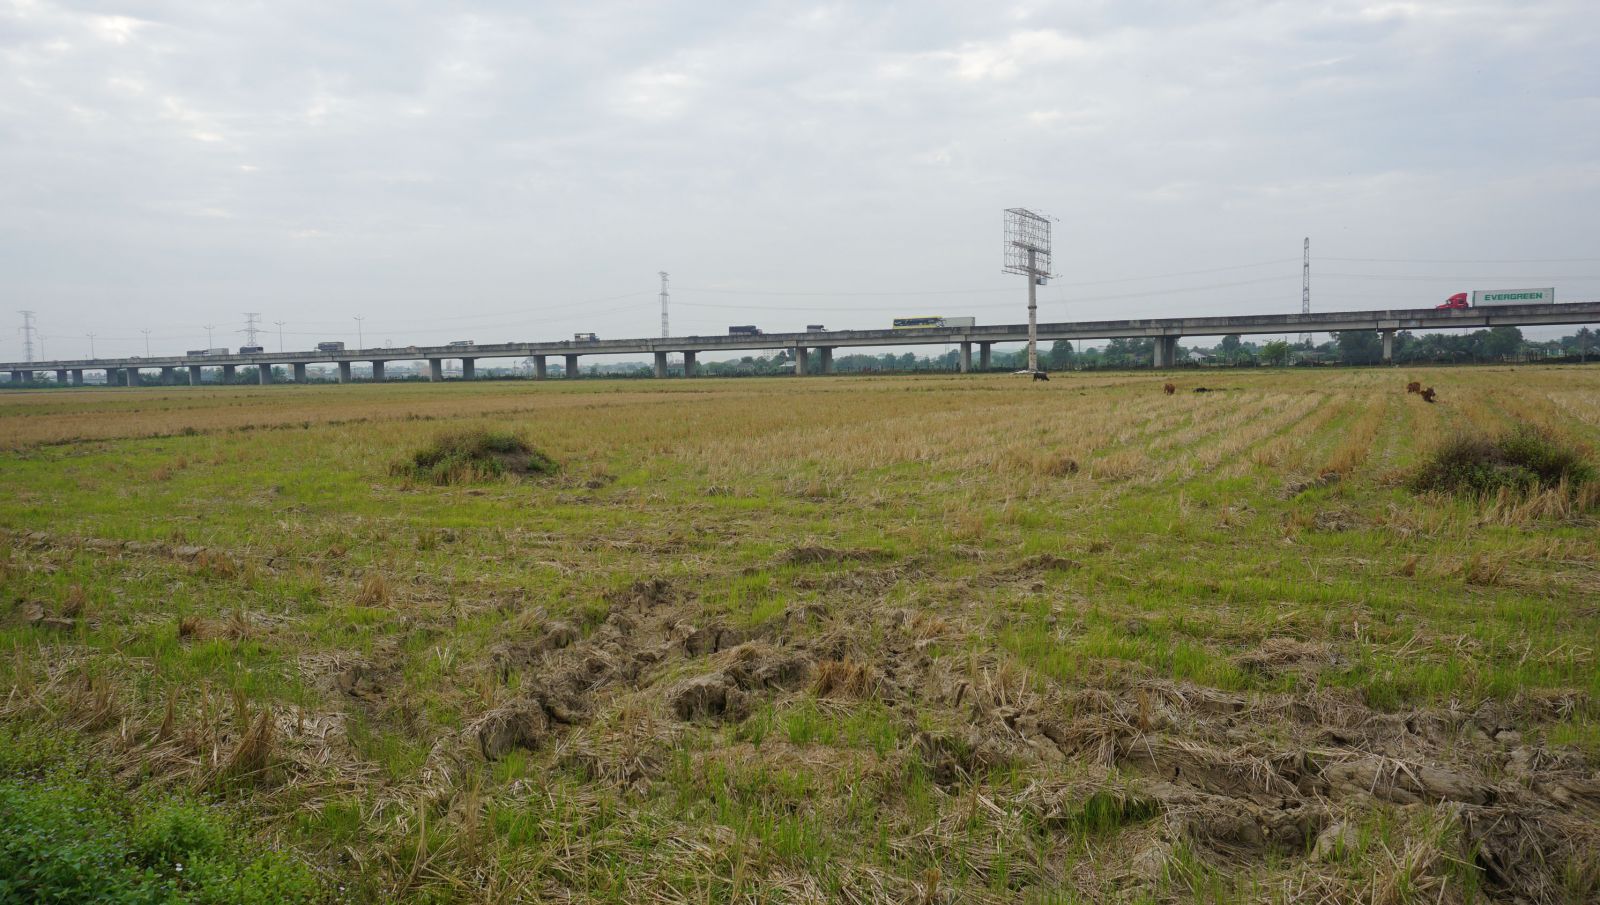 Vị trí đất thực hiện Dự án Đường tỉnh 830E và Dự án tạo quỹ đất sạch để bố trí tái định cư Đường tỉnh 830E và phát triển khu đô thị xã Thanh Phú. Đây là các dự án trọng điểm của tỉnh trên địa bàn huyện Bến Lức